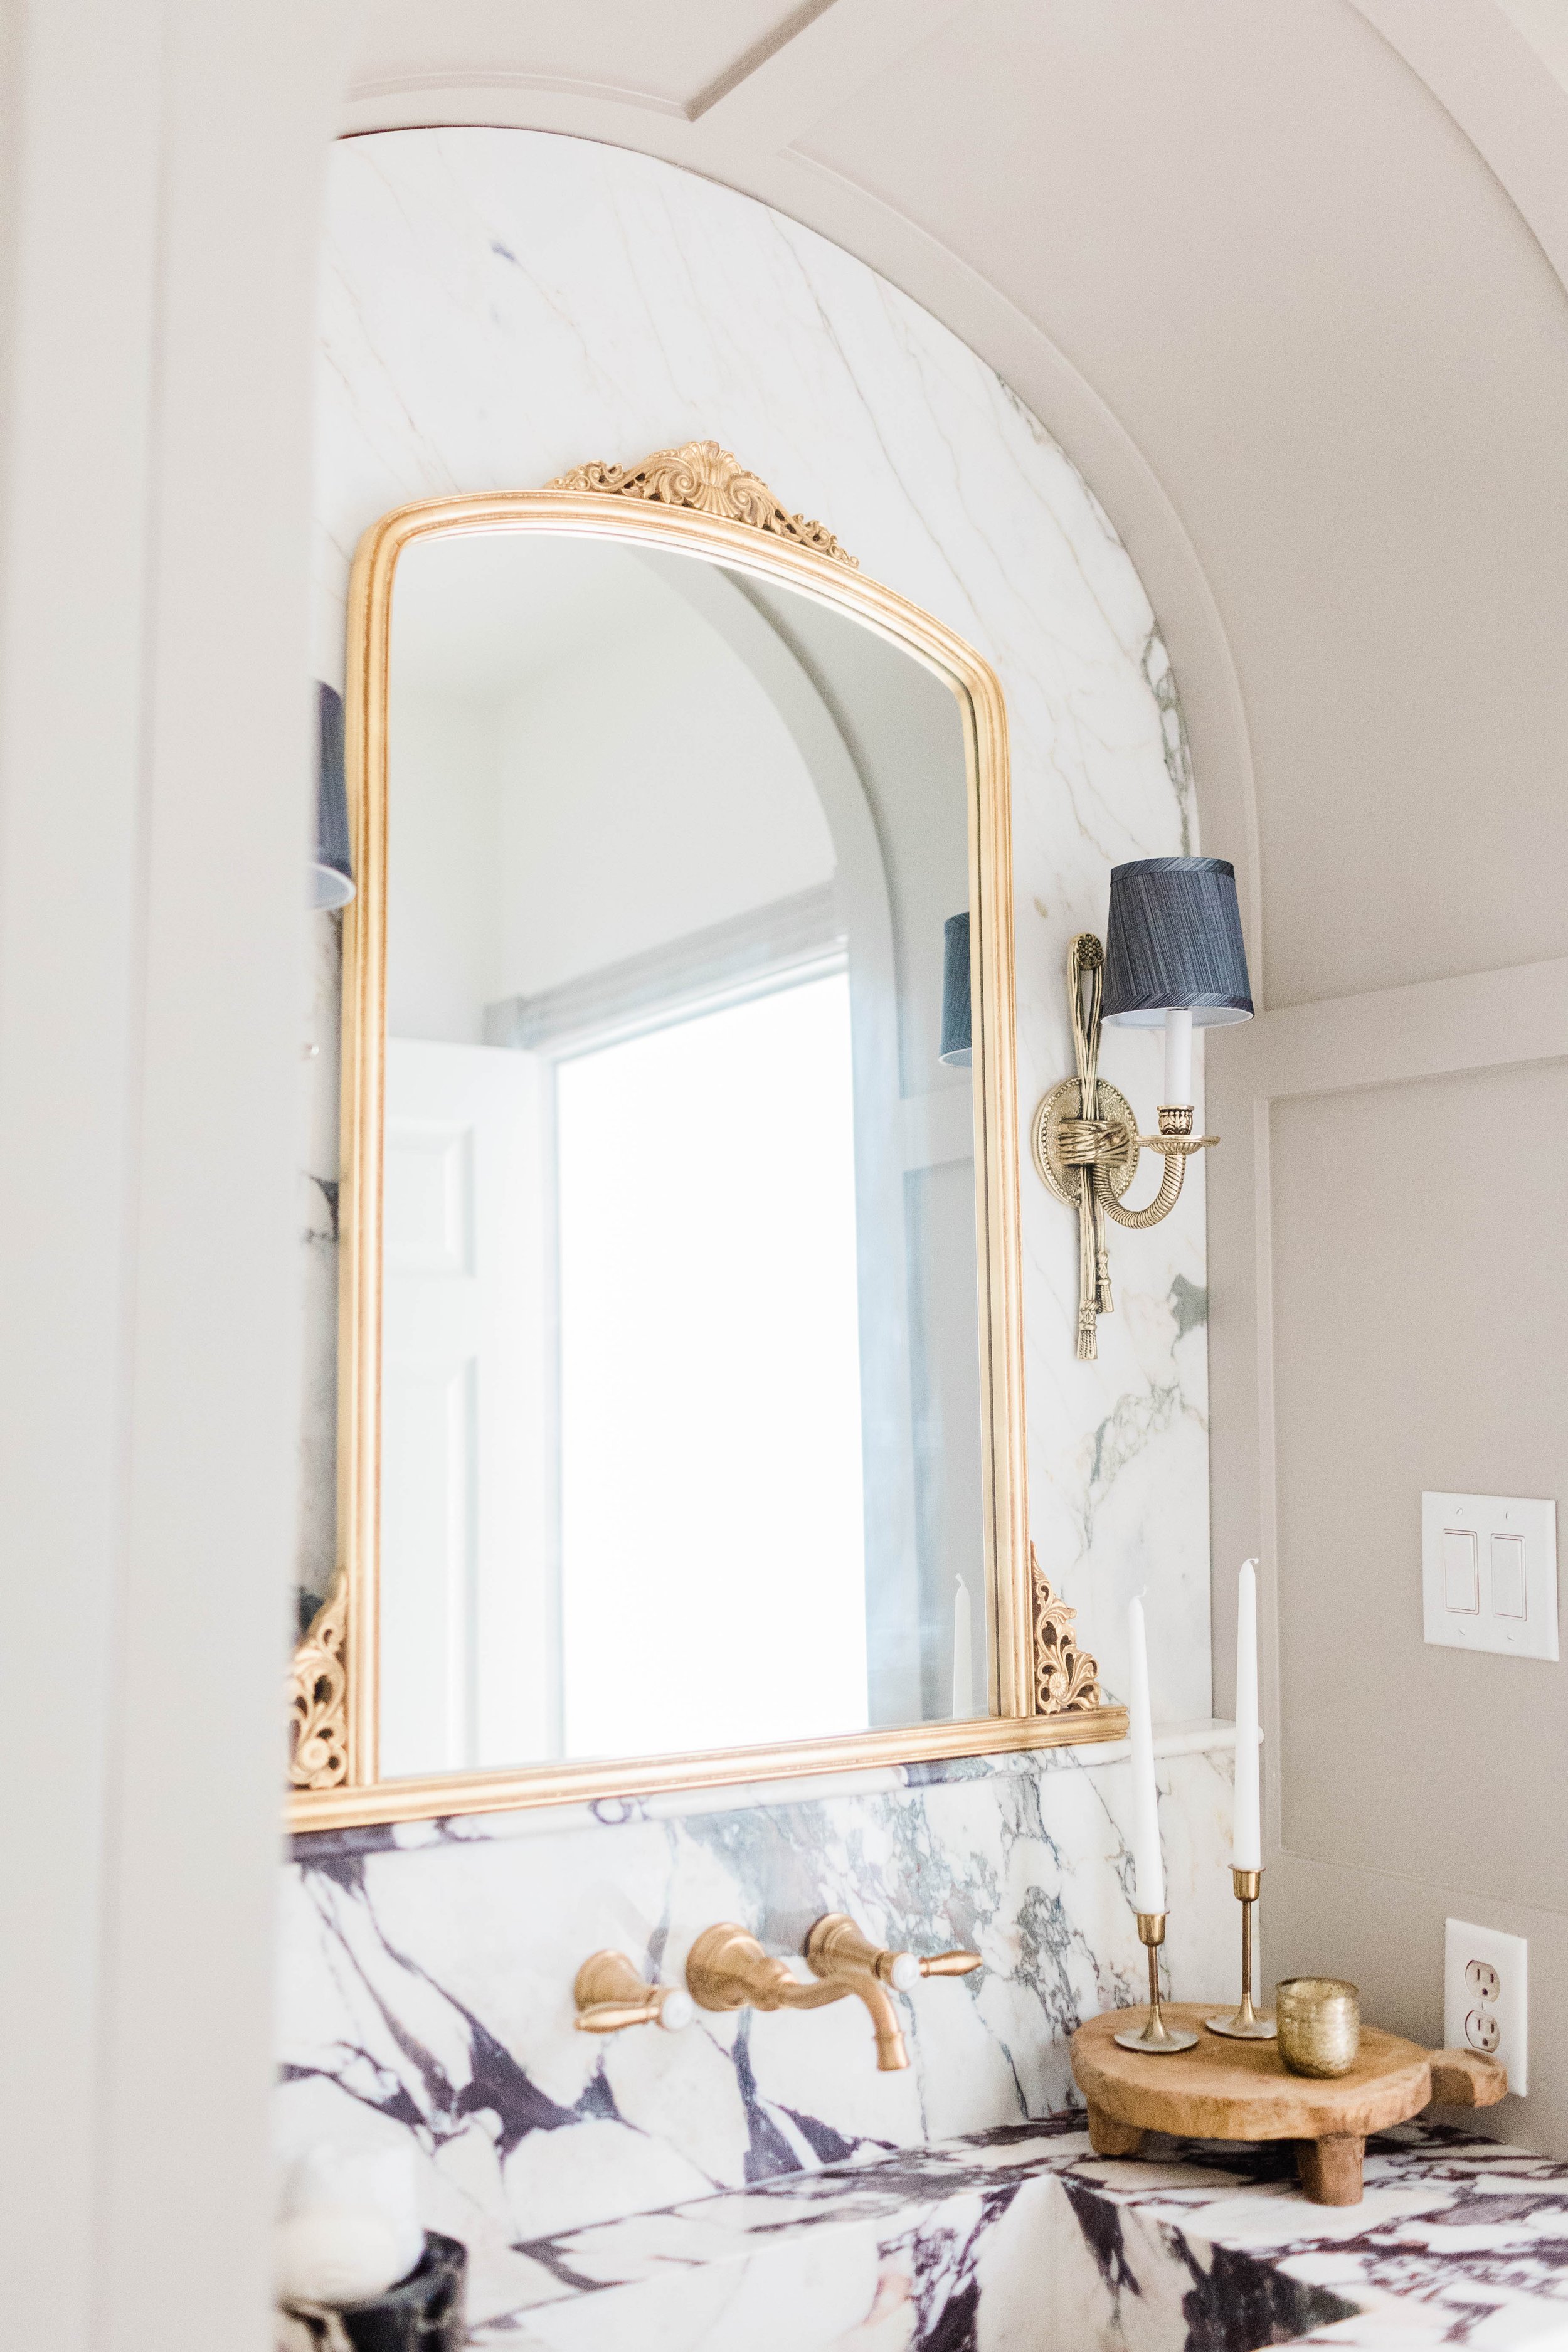 powder bathroom remodel home depot decor house renovation anthropologie mirror dupe marble backsplash candlesticks